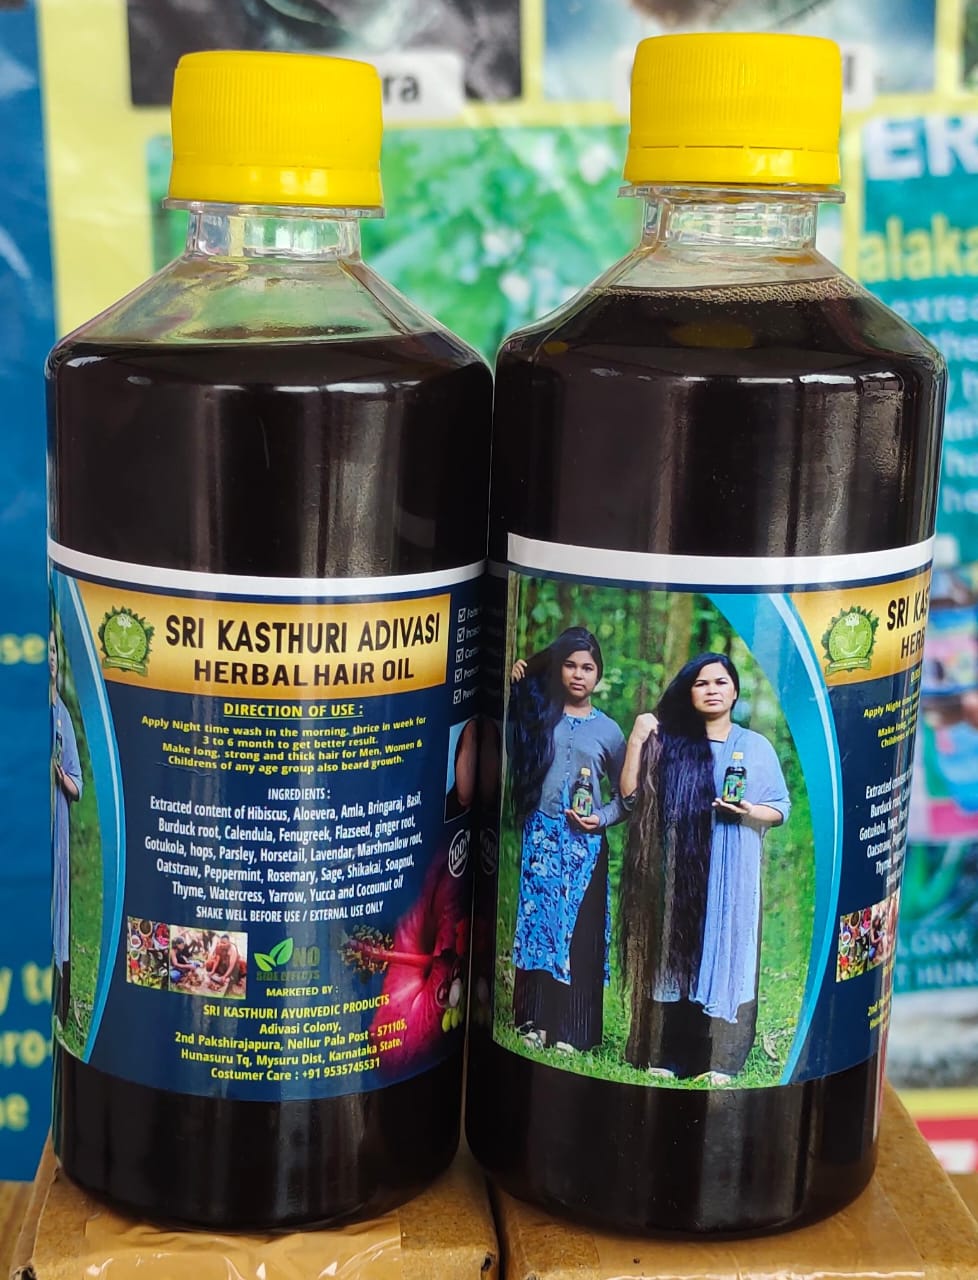 Sri Kasturi Adivasi Herbal hair Oil